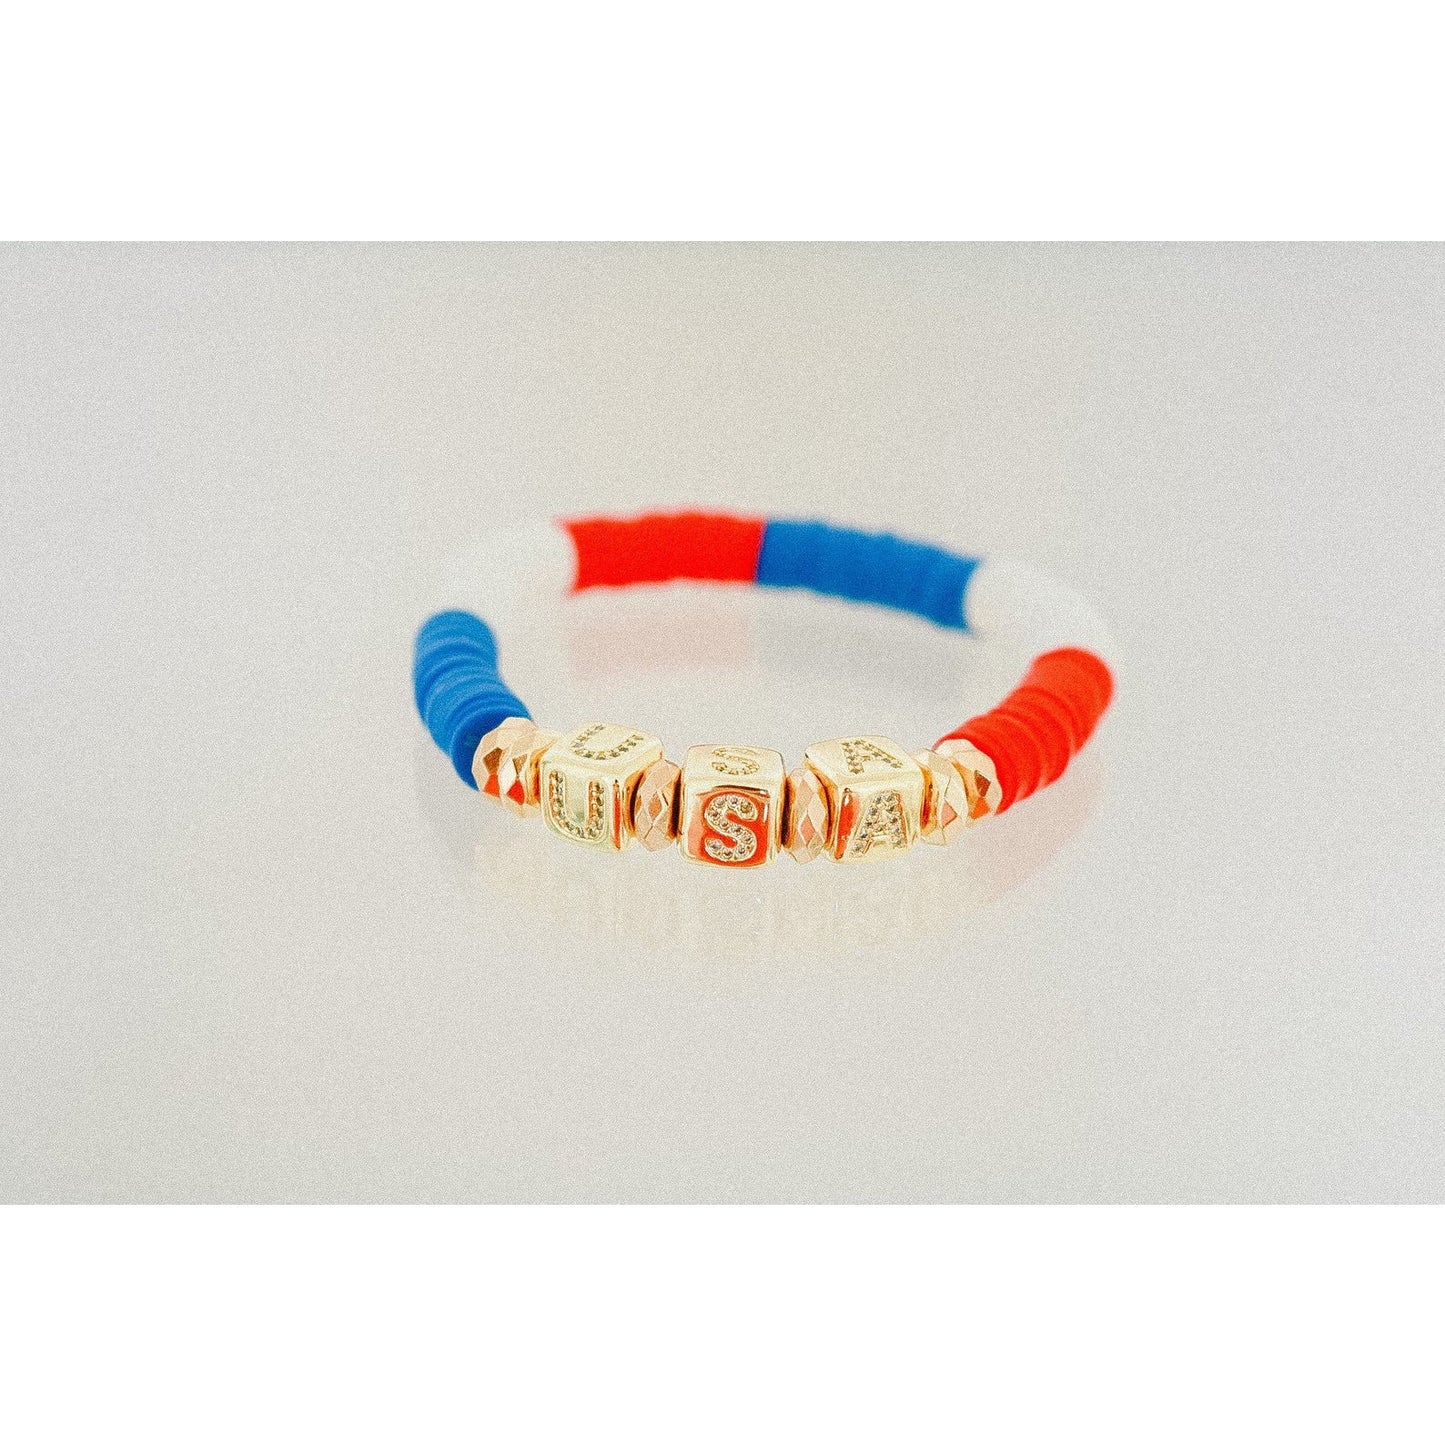 American Pride (USA) Pave Polymer Clay Stretch Bracelet